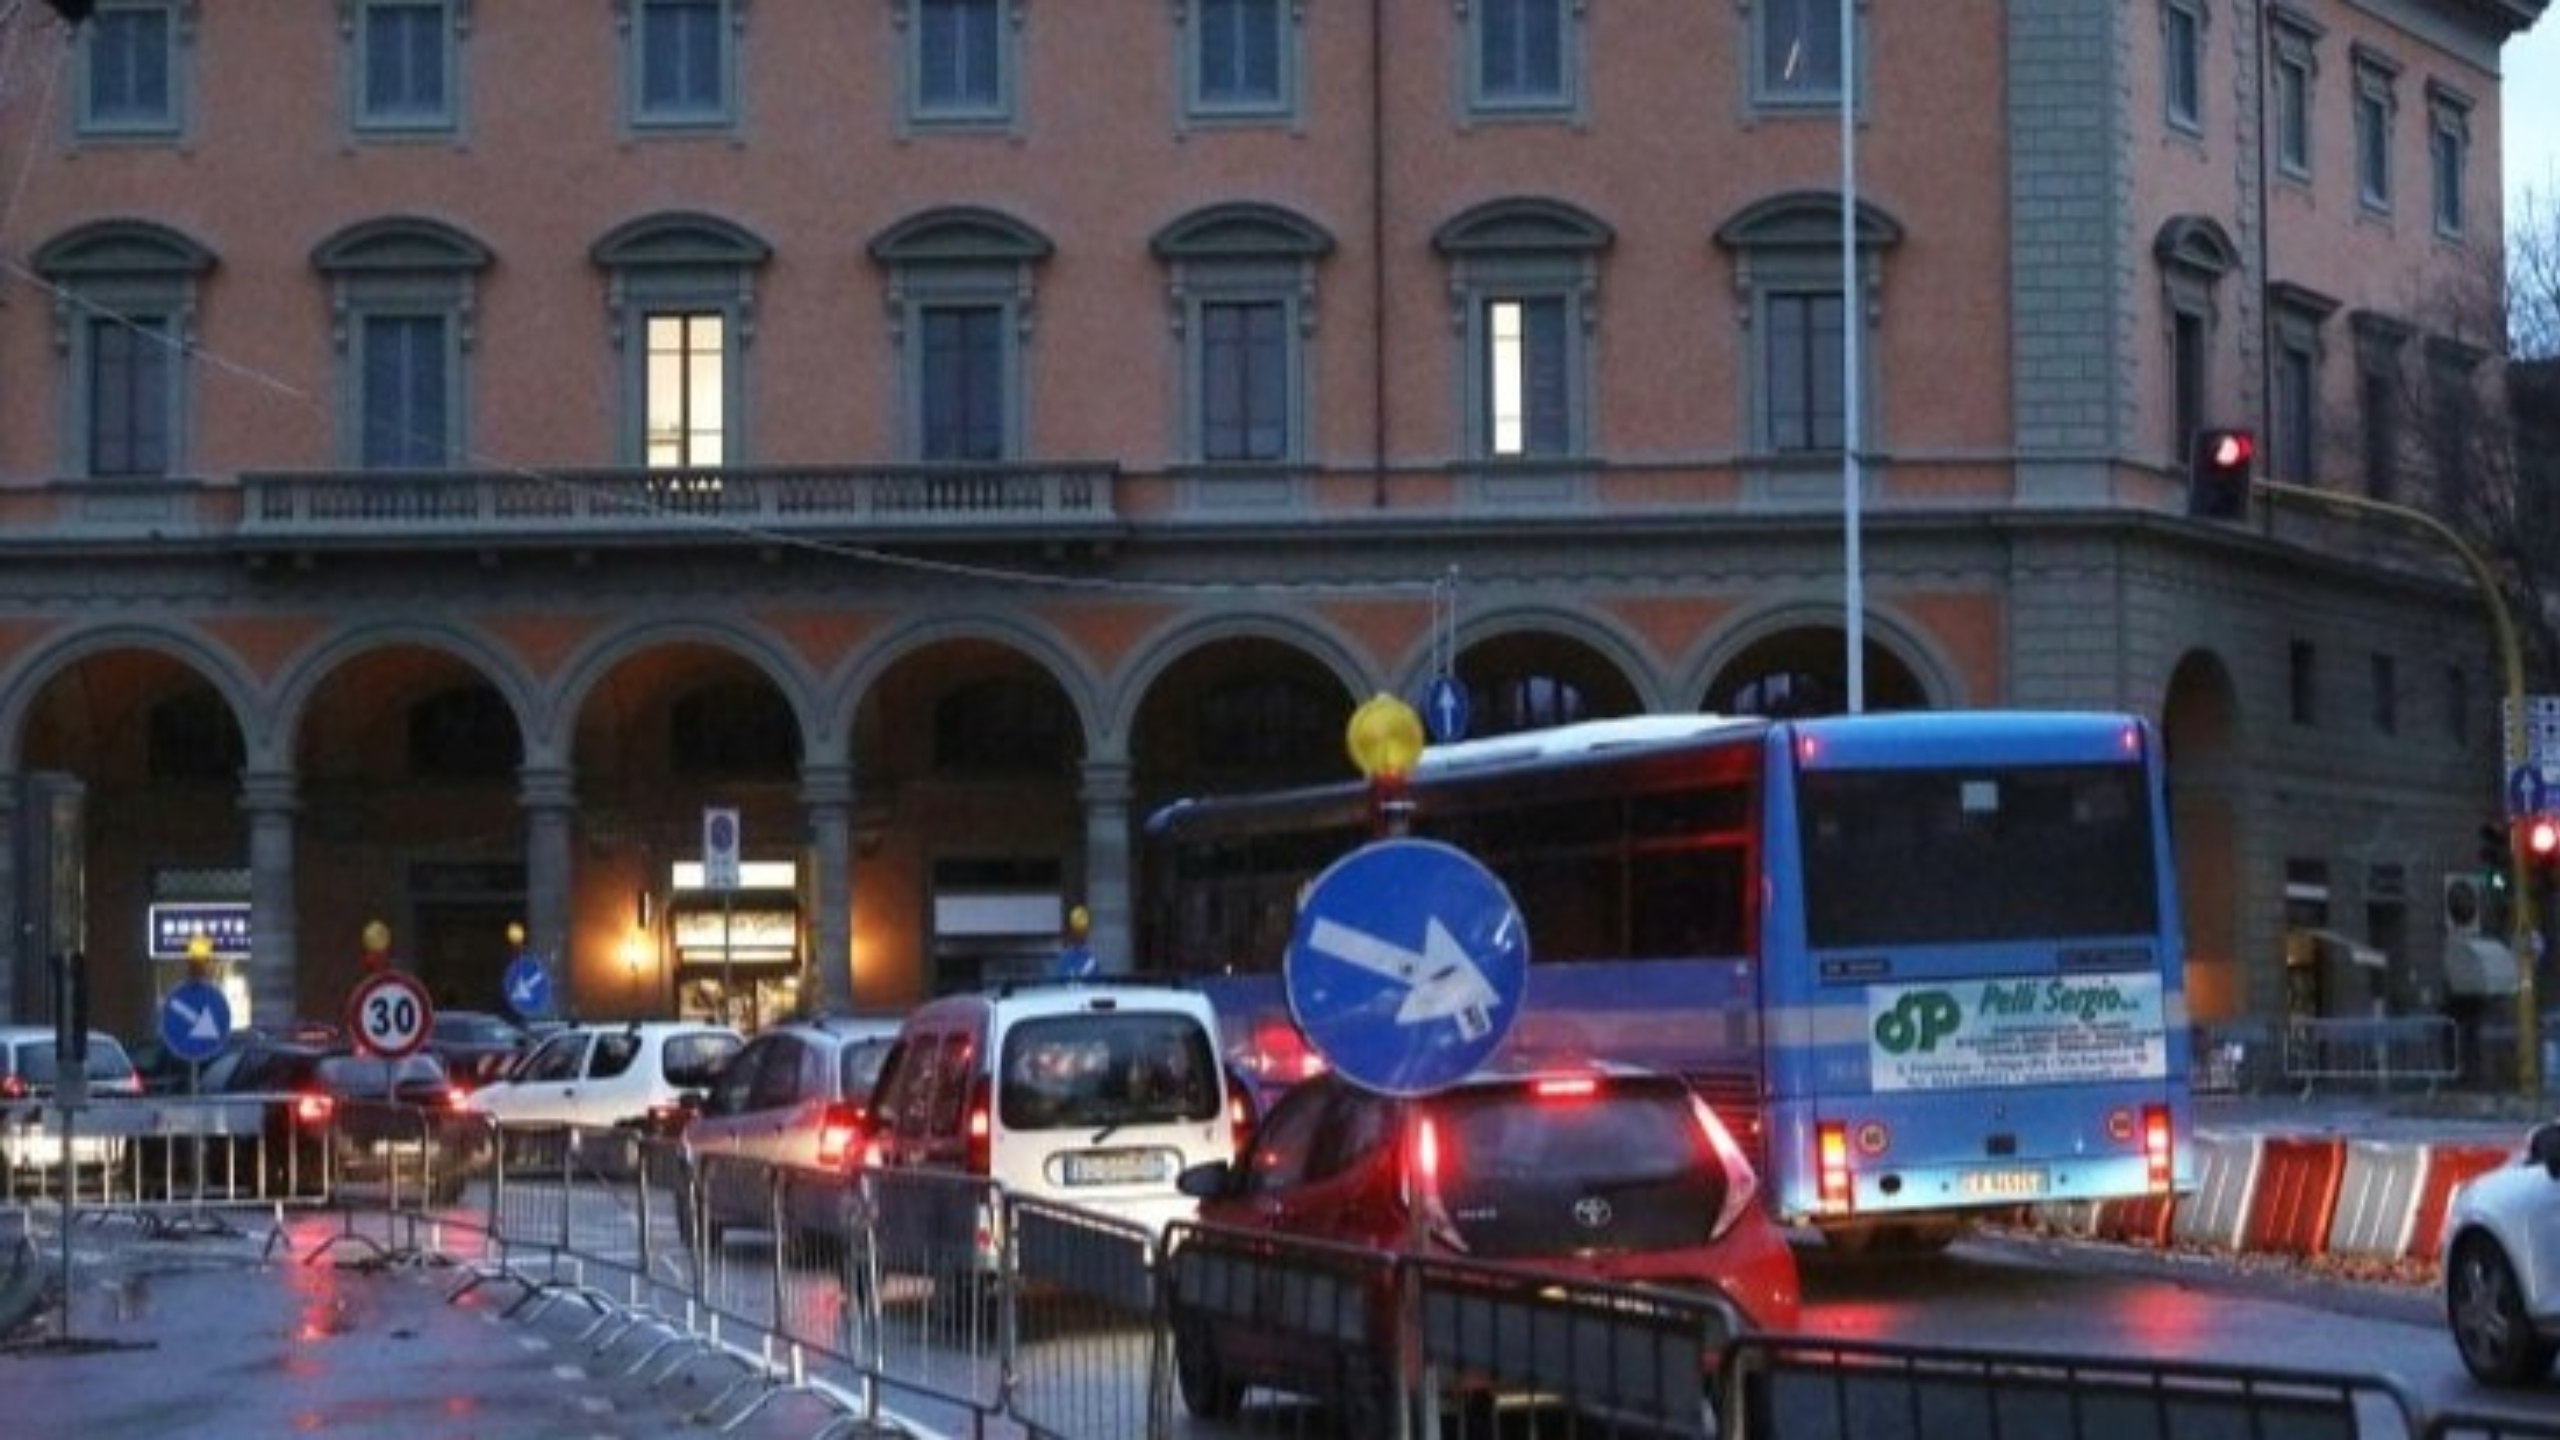 Divieti dal 1 giugno per mezzi euro 5 diesel a Firenze se verranno superati i limiti di inquinanti